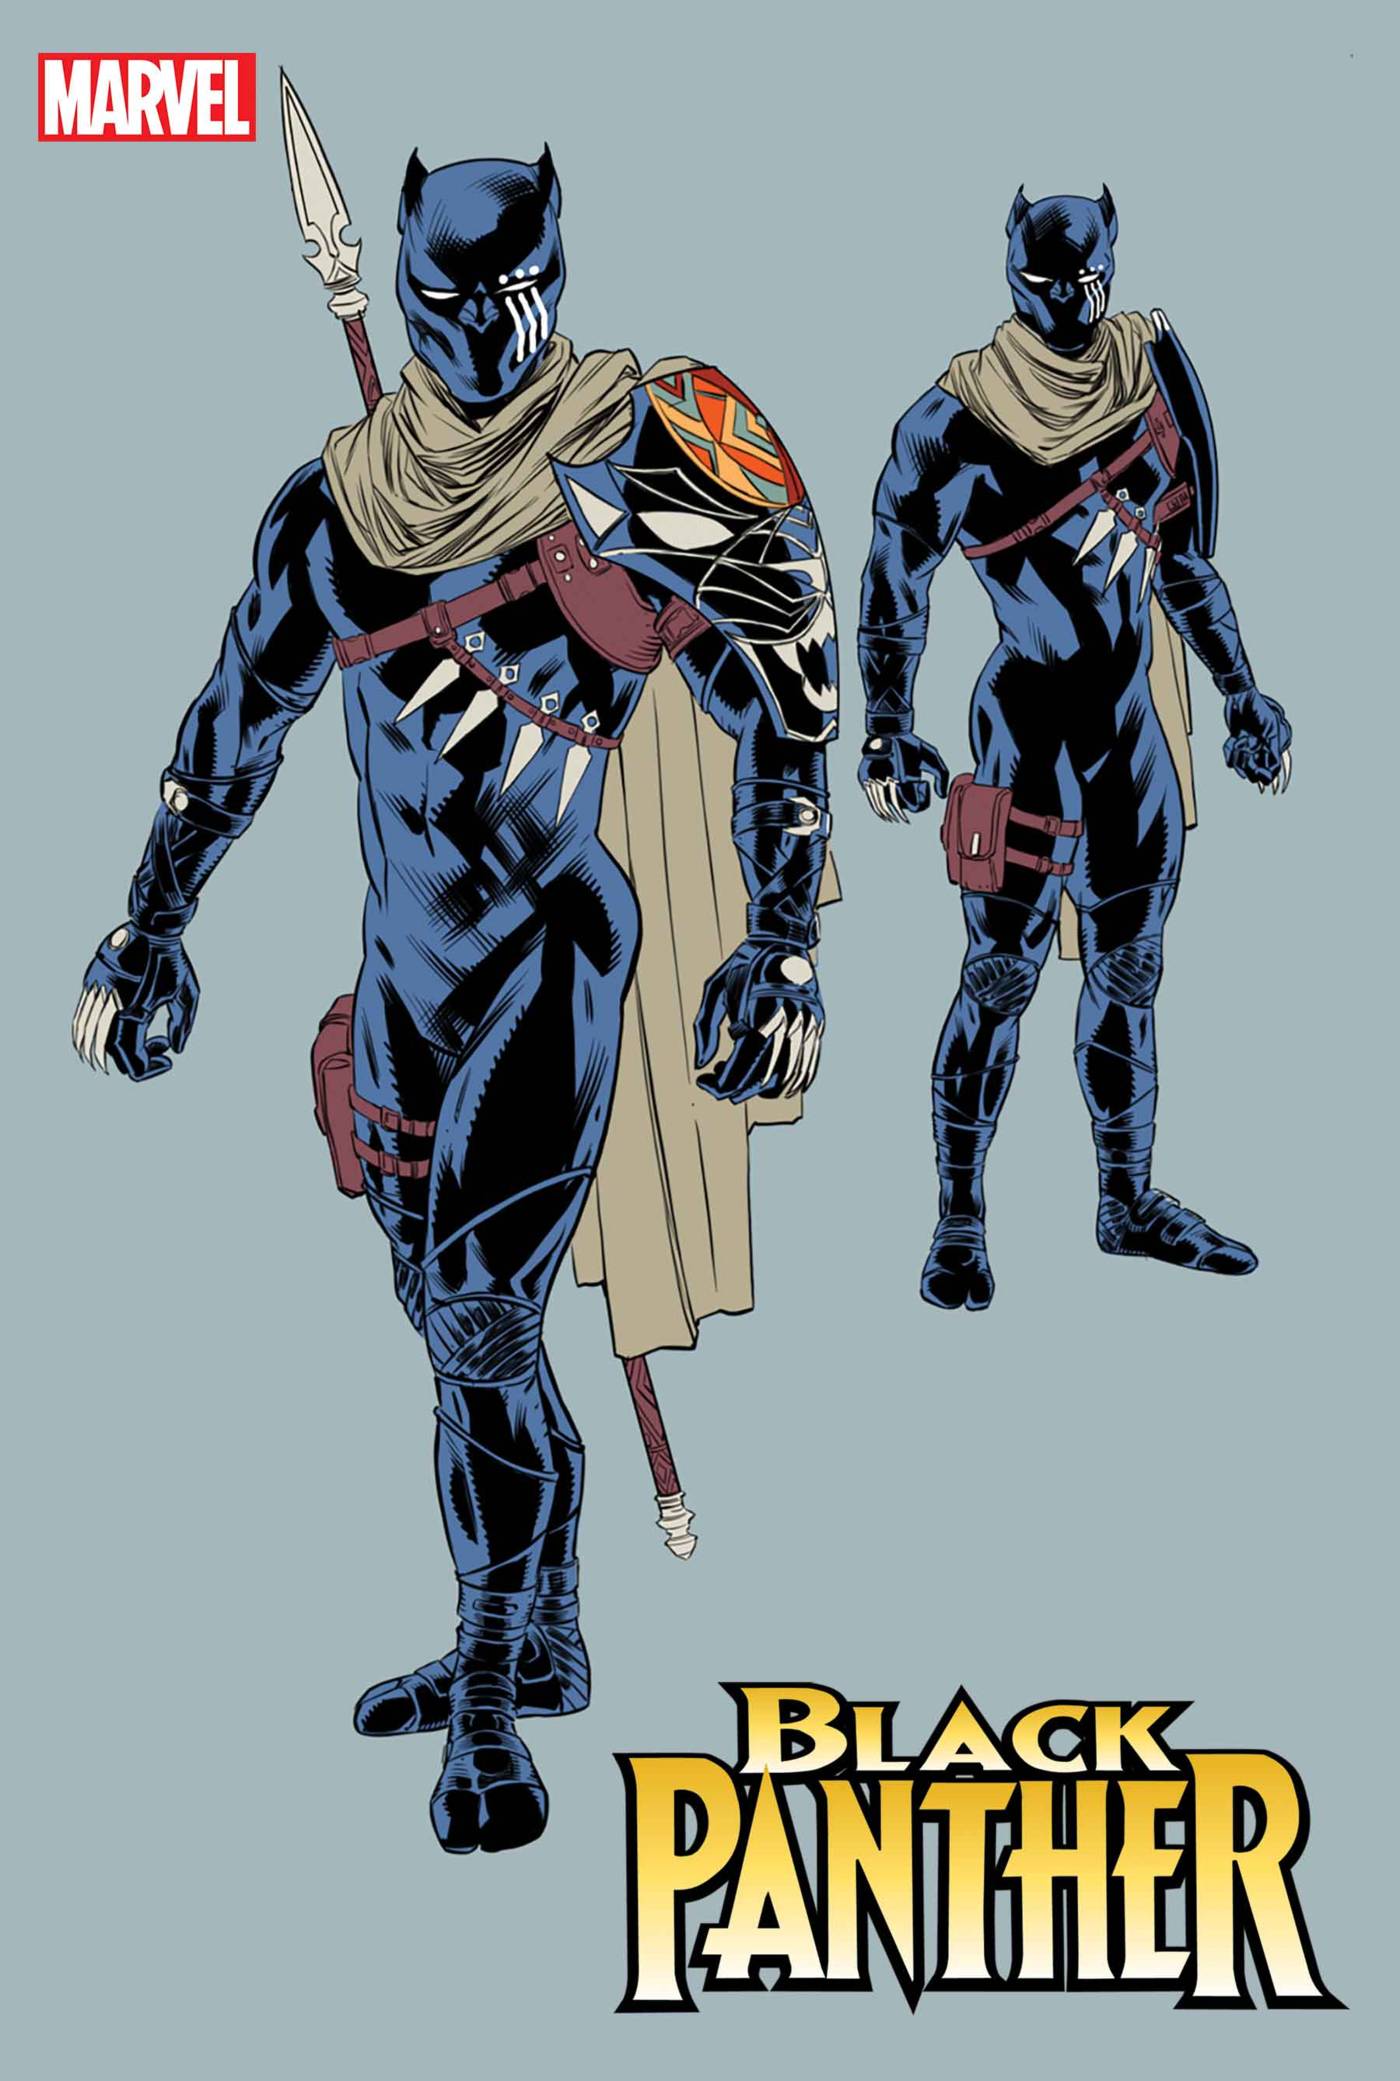 Black Panther #1 10 Copy Incv Chris Allen Design Var - State of Comics